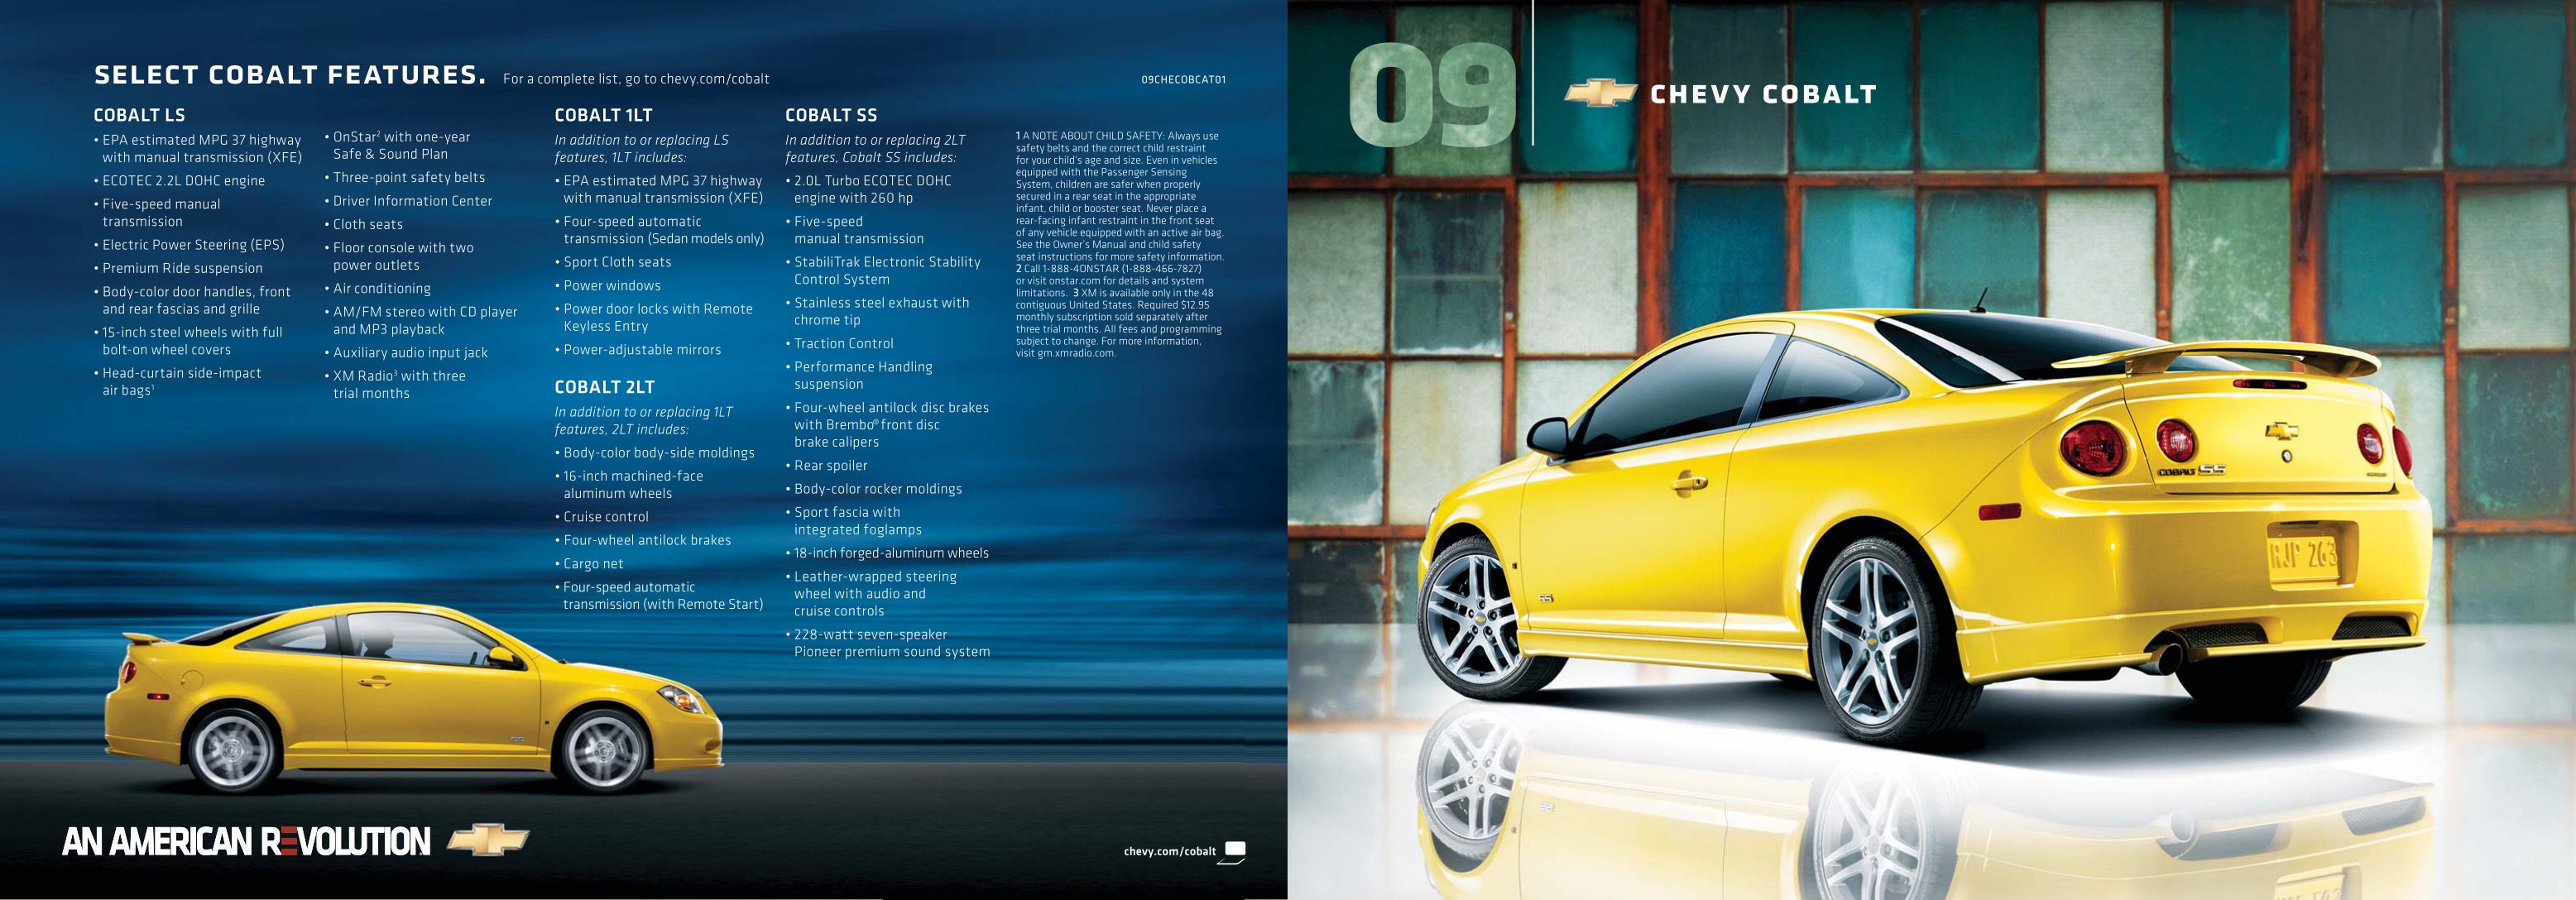 2009 Chevrolet Cobalt Brochure